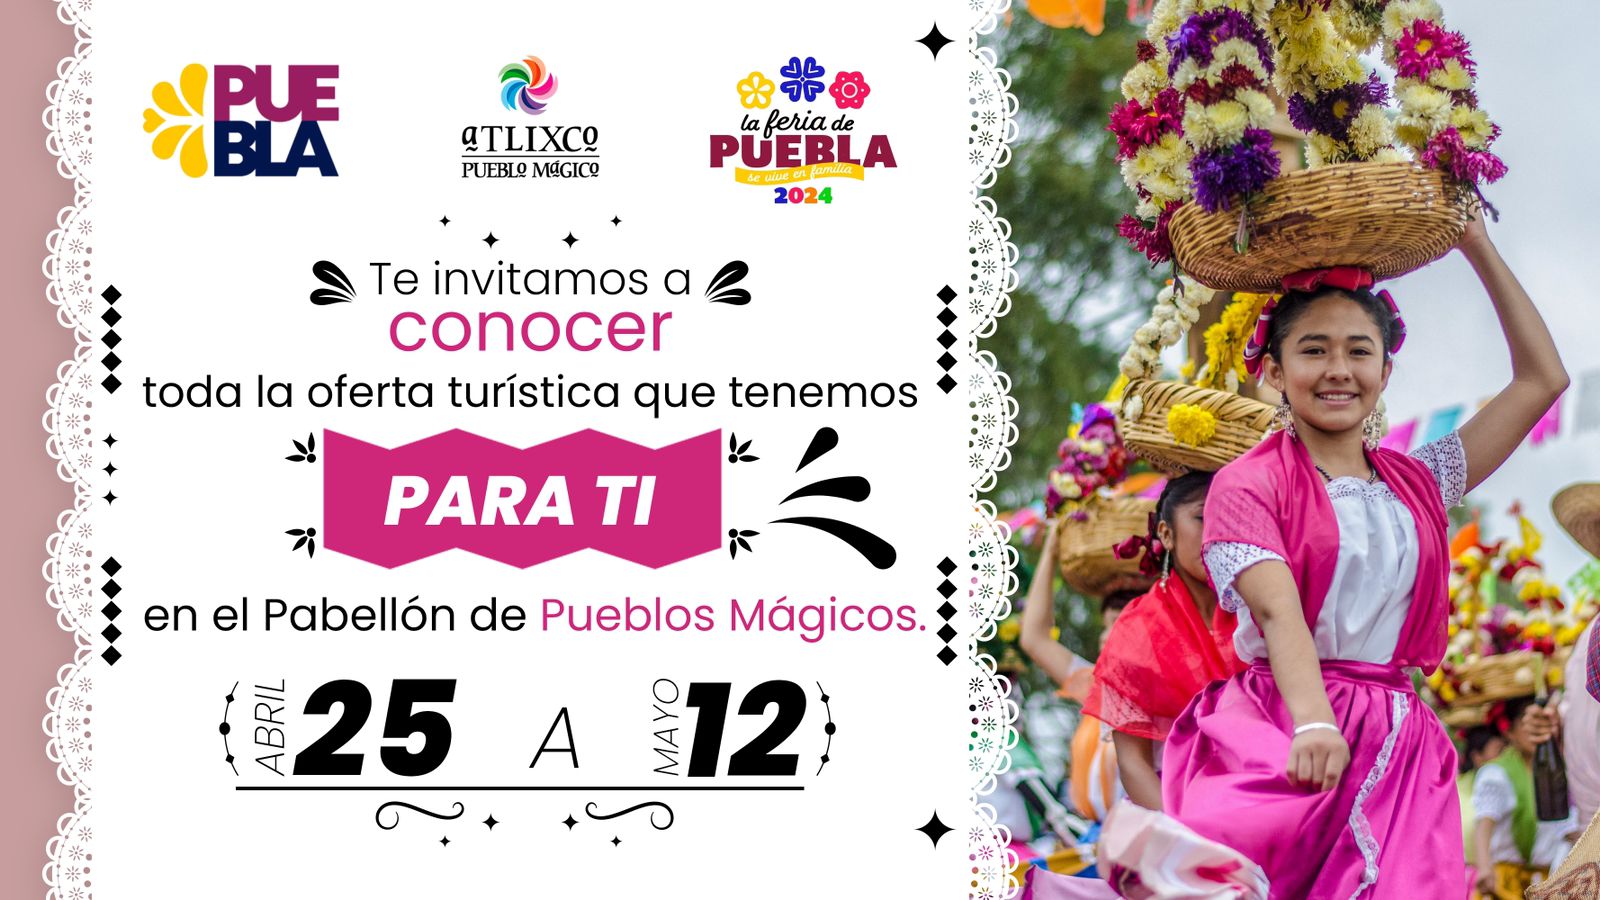 Atlixco participará en el pabellón de Pueblos Mágicos de la Feria Puebla 2024